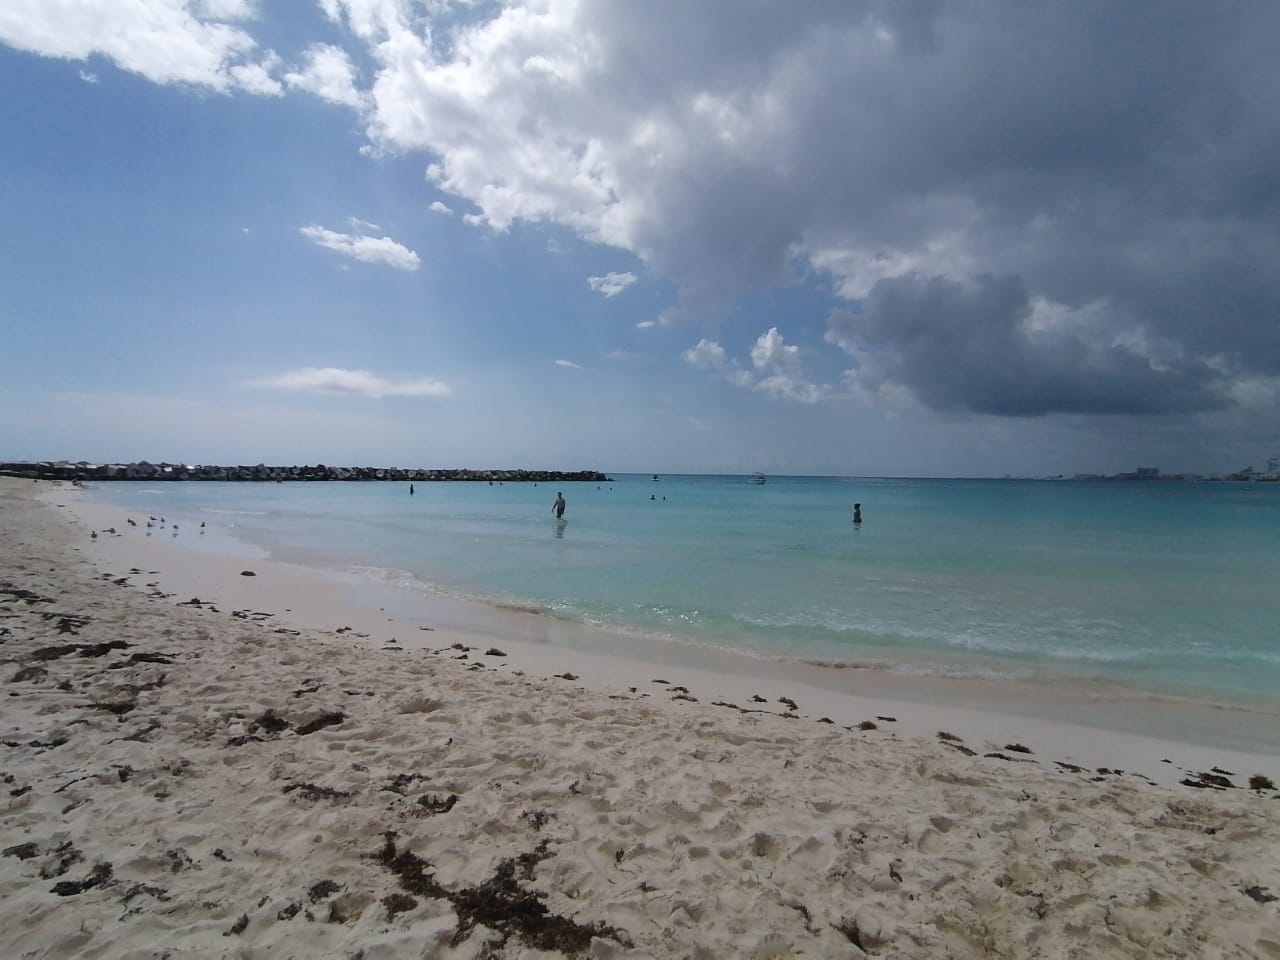 Clima en Cancún: Se pronostica ambiente muy caluroso en la Península de Yucatán